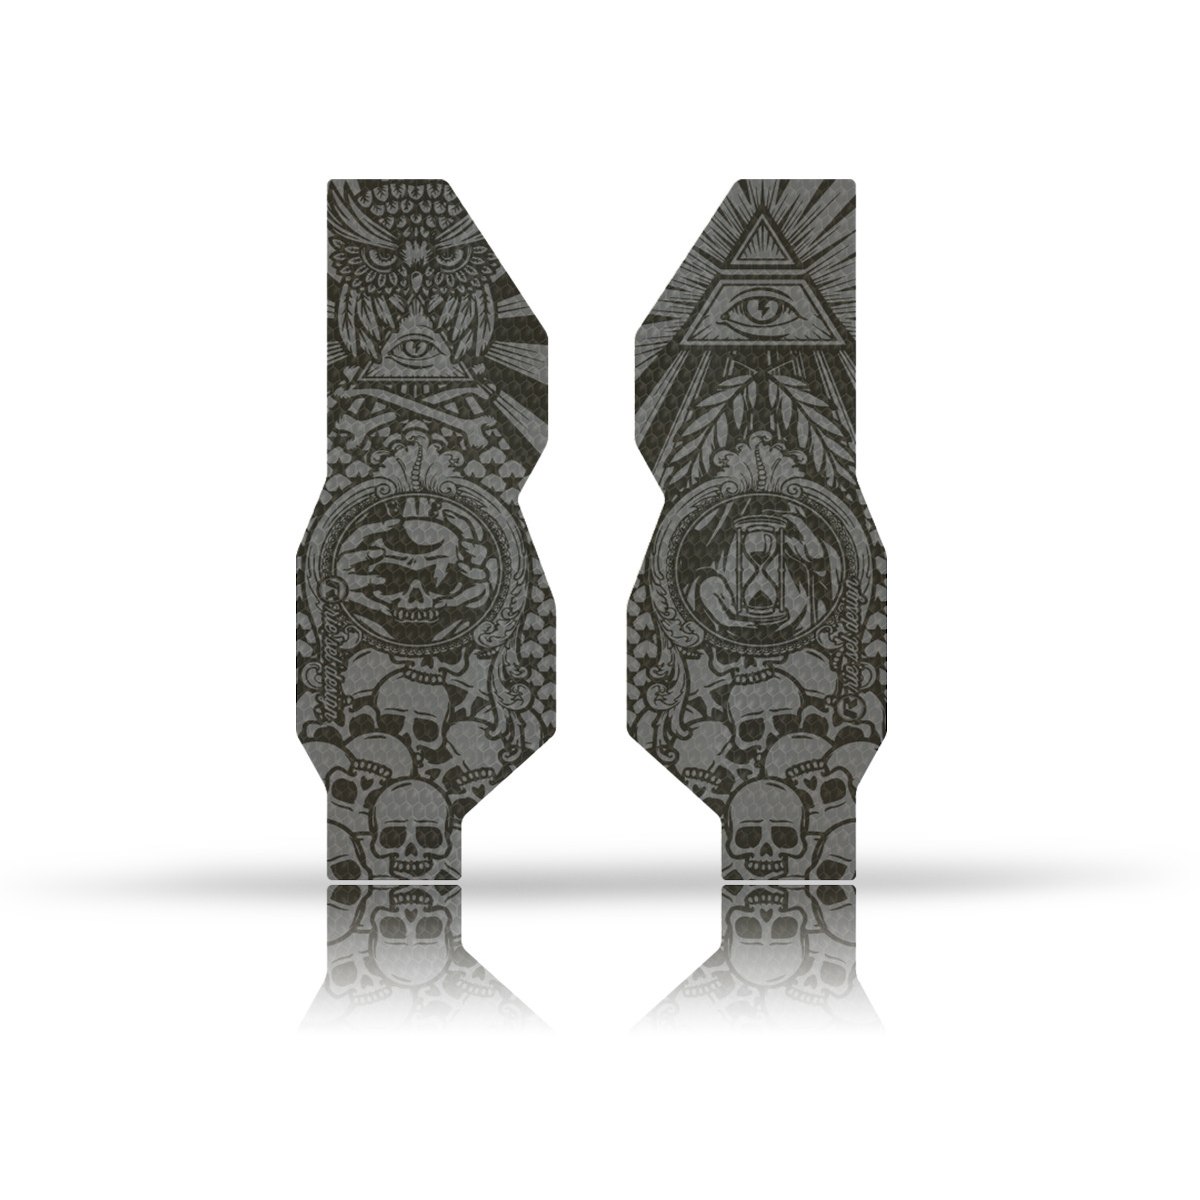 Produktbild von rie:sel design fork:Tape 3000 Gabelschutz - illuminati